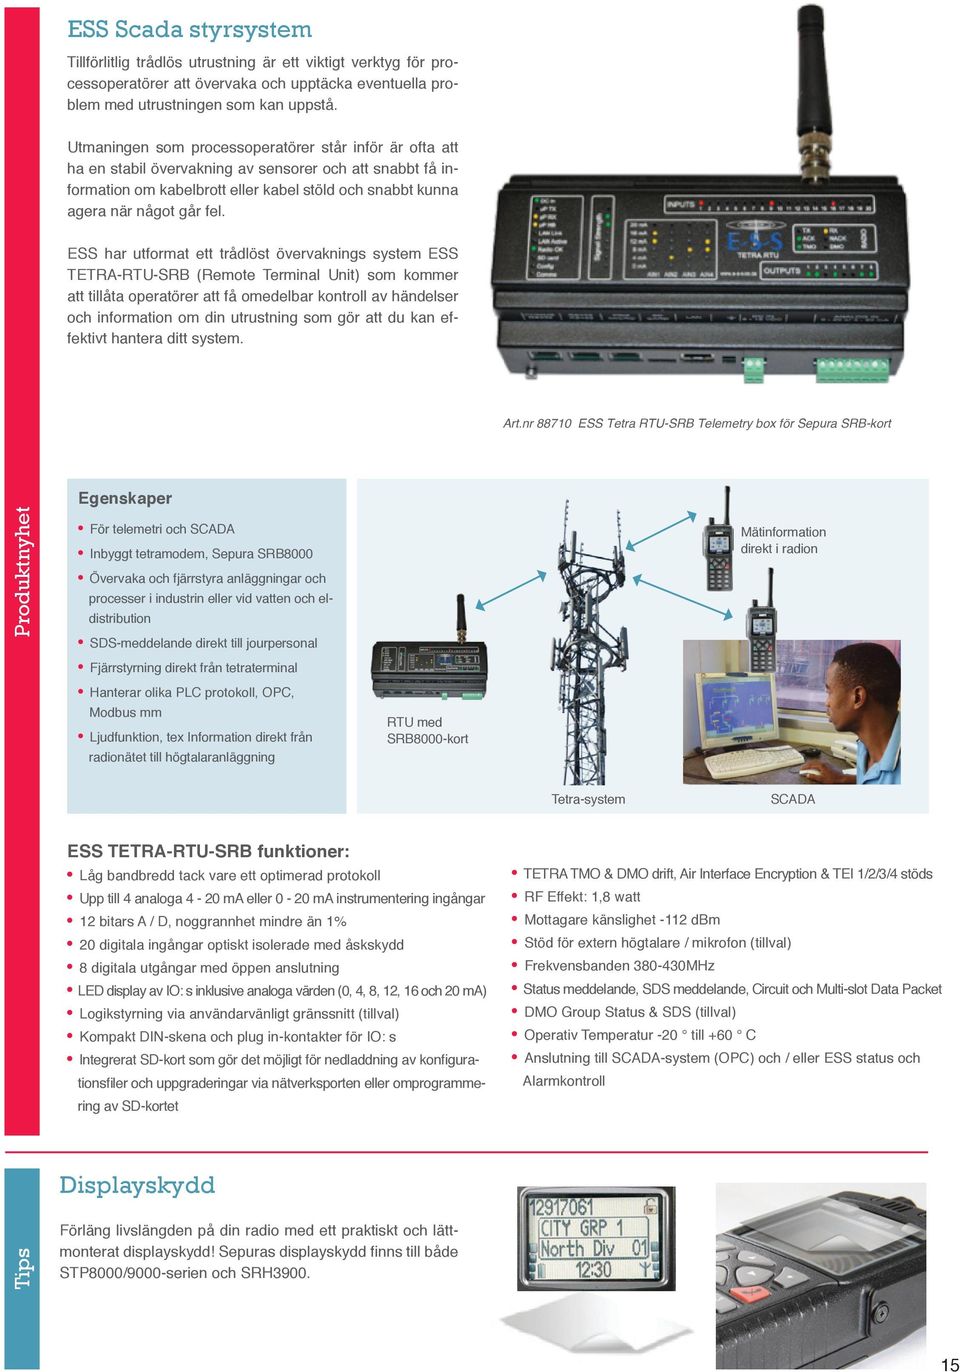 ESS har utformat ett trådlöst övervaknings system ESS TETRA-RTU-SRB (Remote Terminal Unit) som kommer att tillåta operatörer att få omedelbar kontroll av händelser och information om din utrustning